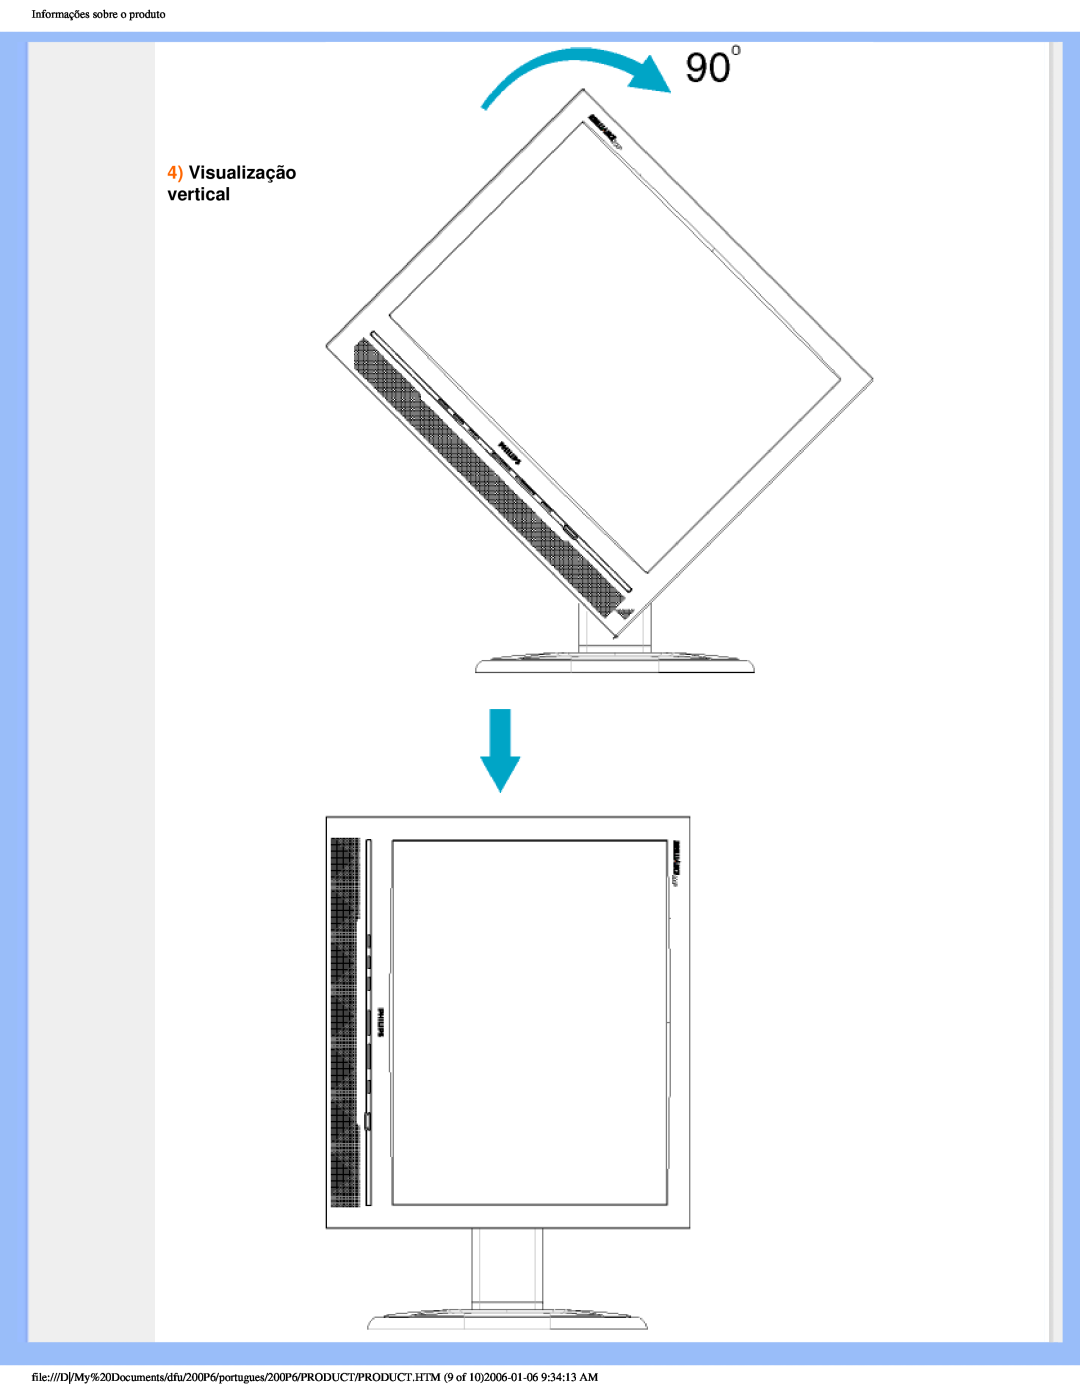 Philips 200P6 user manual Visualização vertical, Informações sobre o produto 